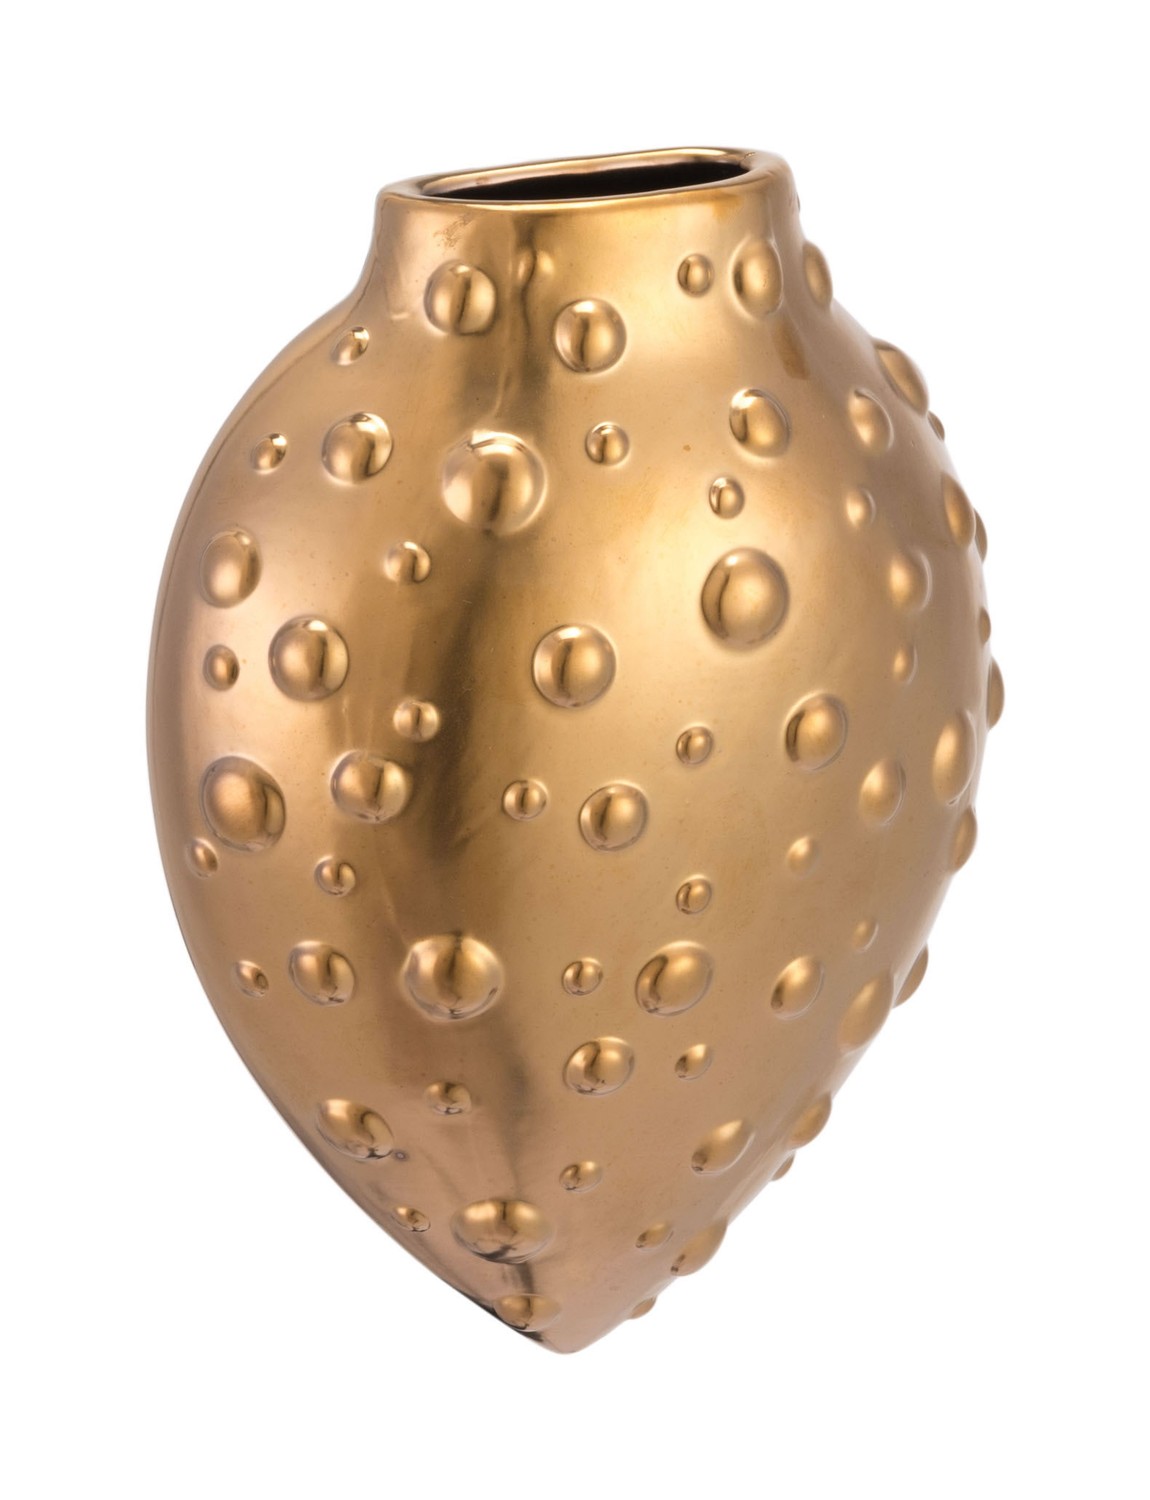 2.8" x 6.1" x 8.1" Matte Gold, Stoneware, Puntos Wall Vase